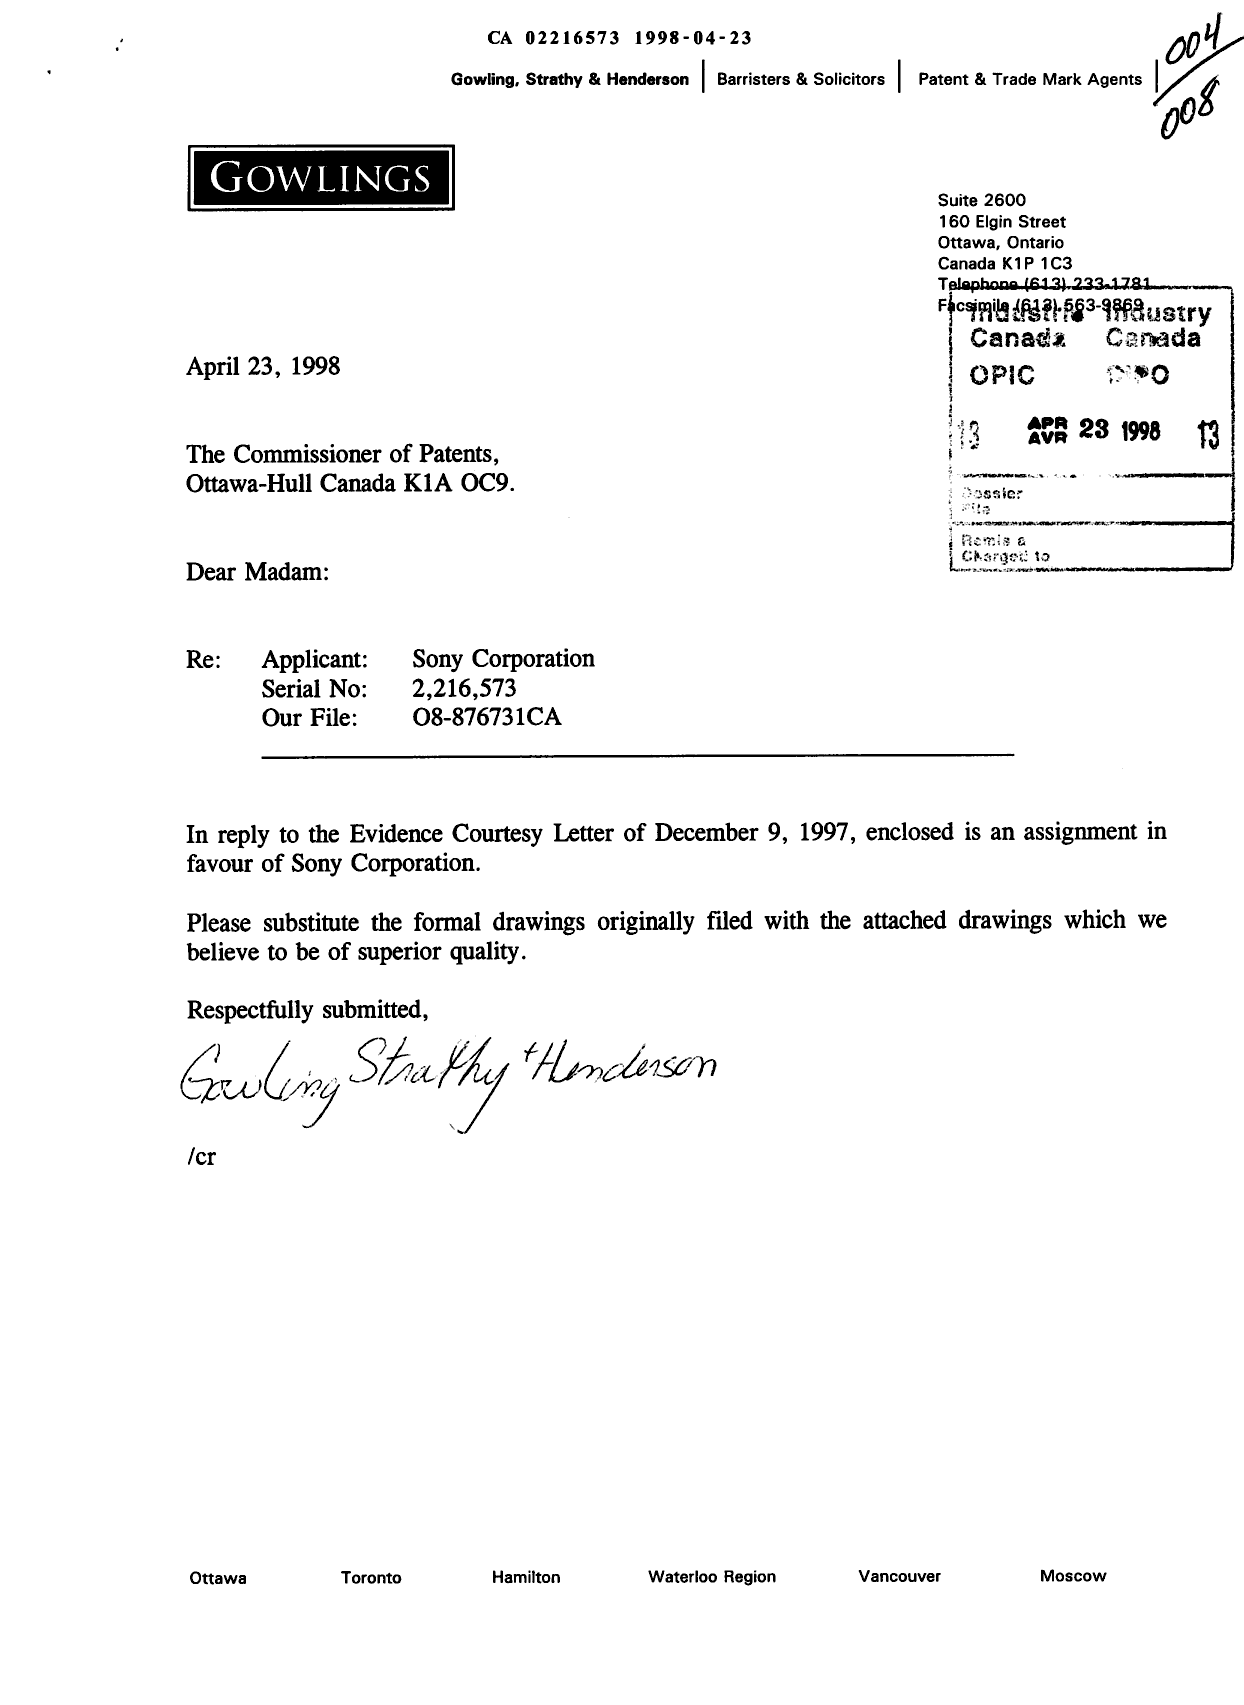 Document de brevet canadien 2216573. Poursuite-Amendment 19980423. Image 1 de 9